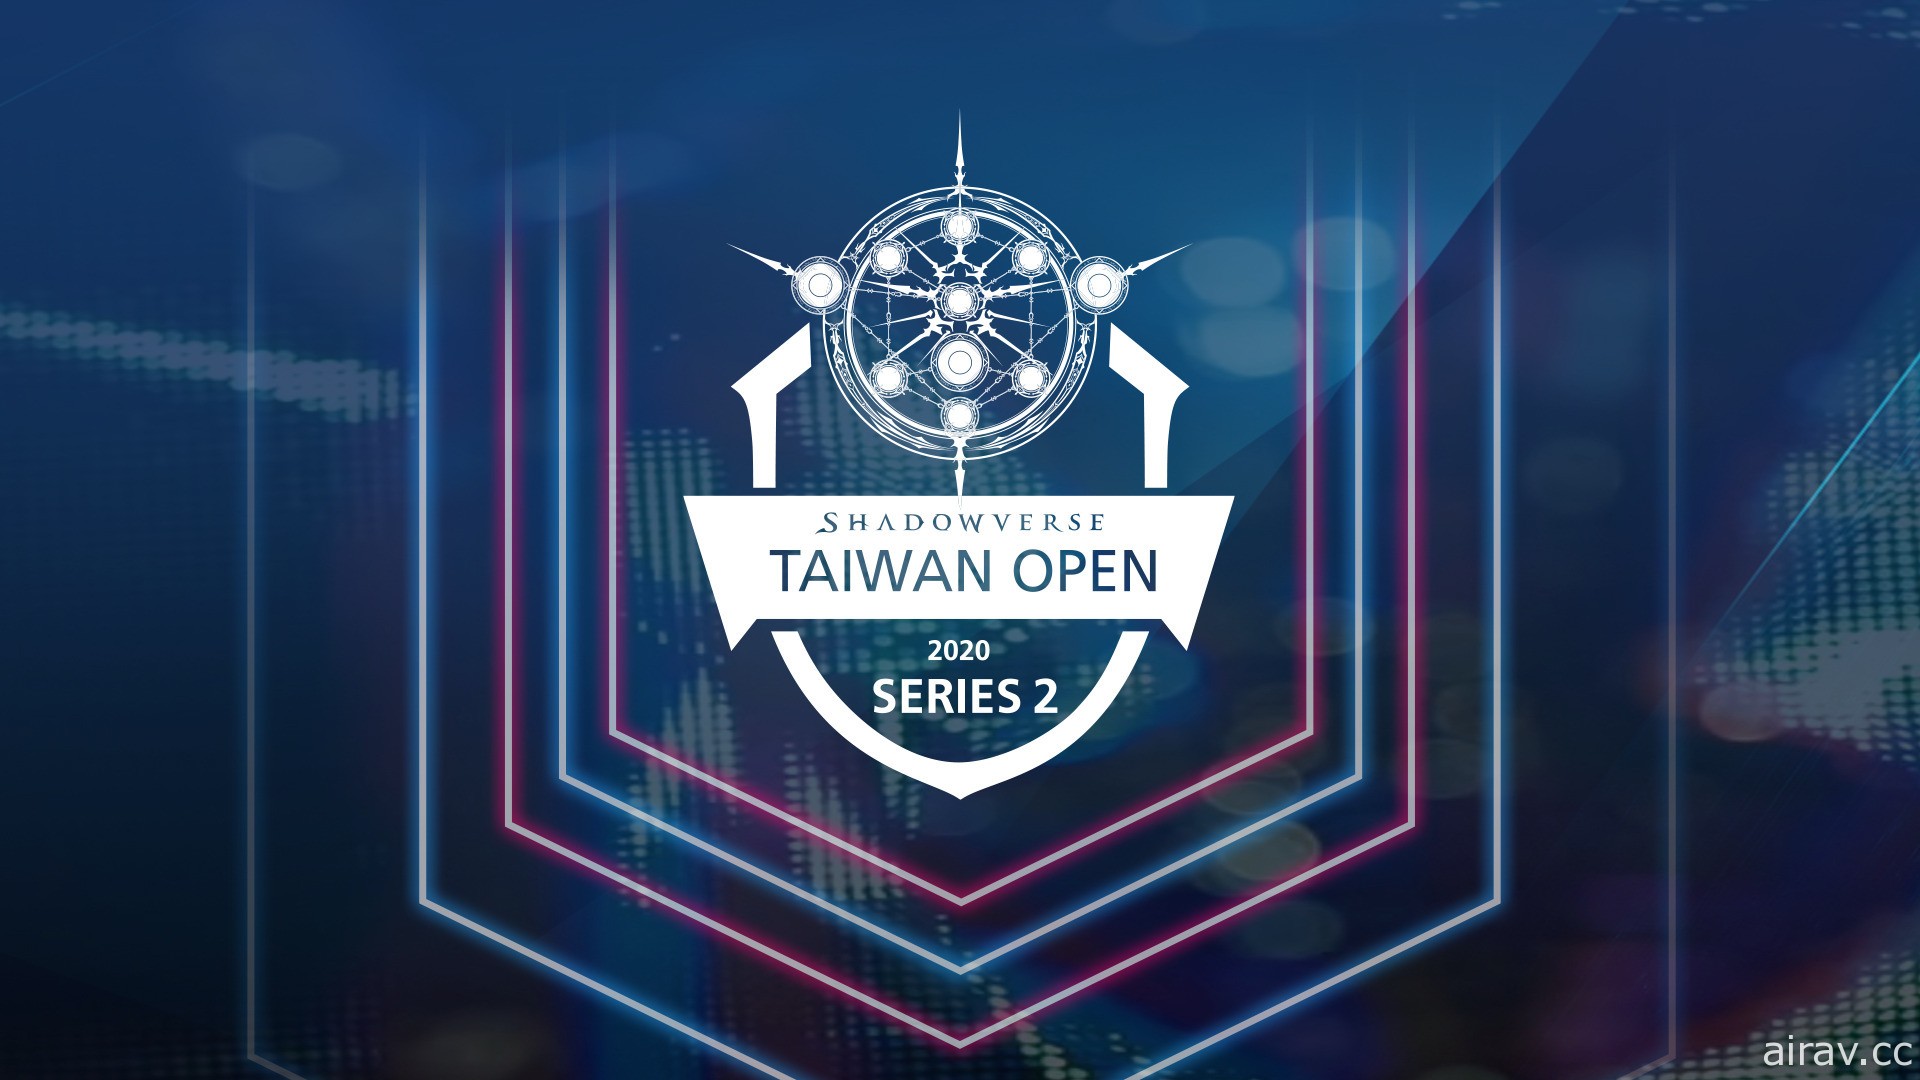 《闇影诗章》台湾官方赛事“Shadowverse Taiwan Open 2020 Series2”开放报名